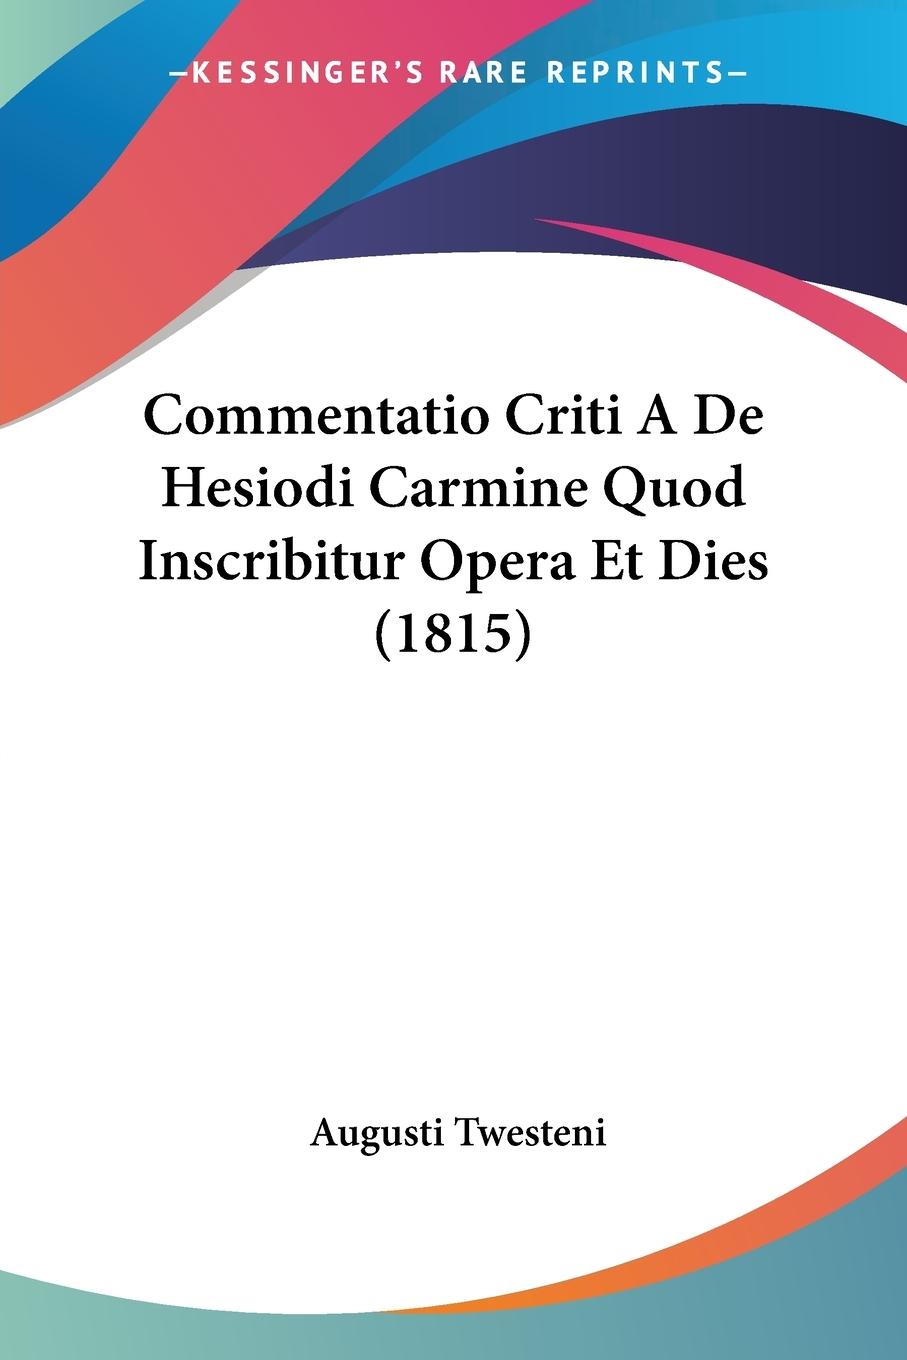 Commentatio Criti A De Hesiodi Carmine Quod Inscribitur Opera Et Dies (1815) - Twesteni, Augusti